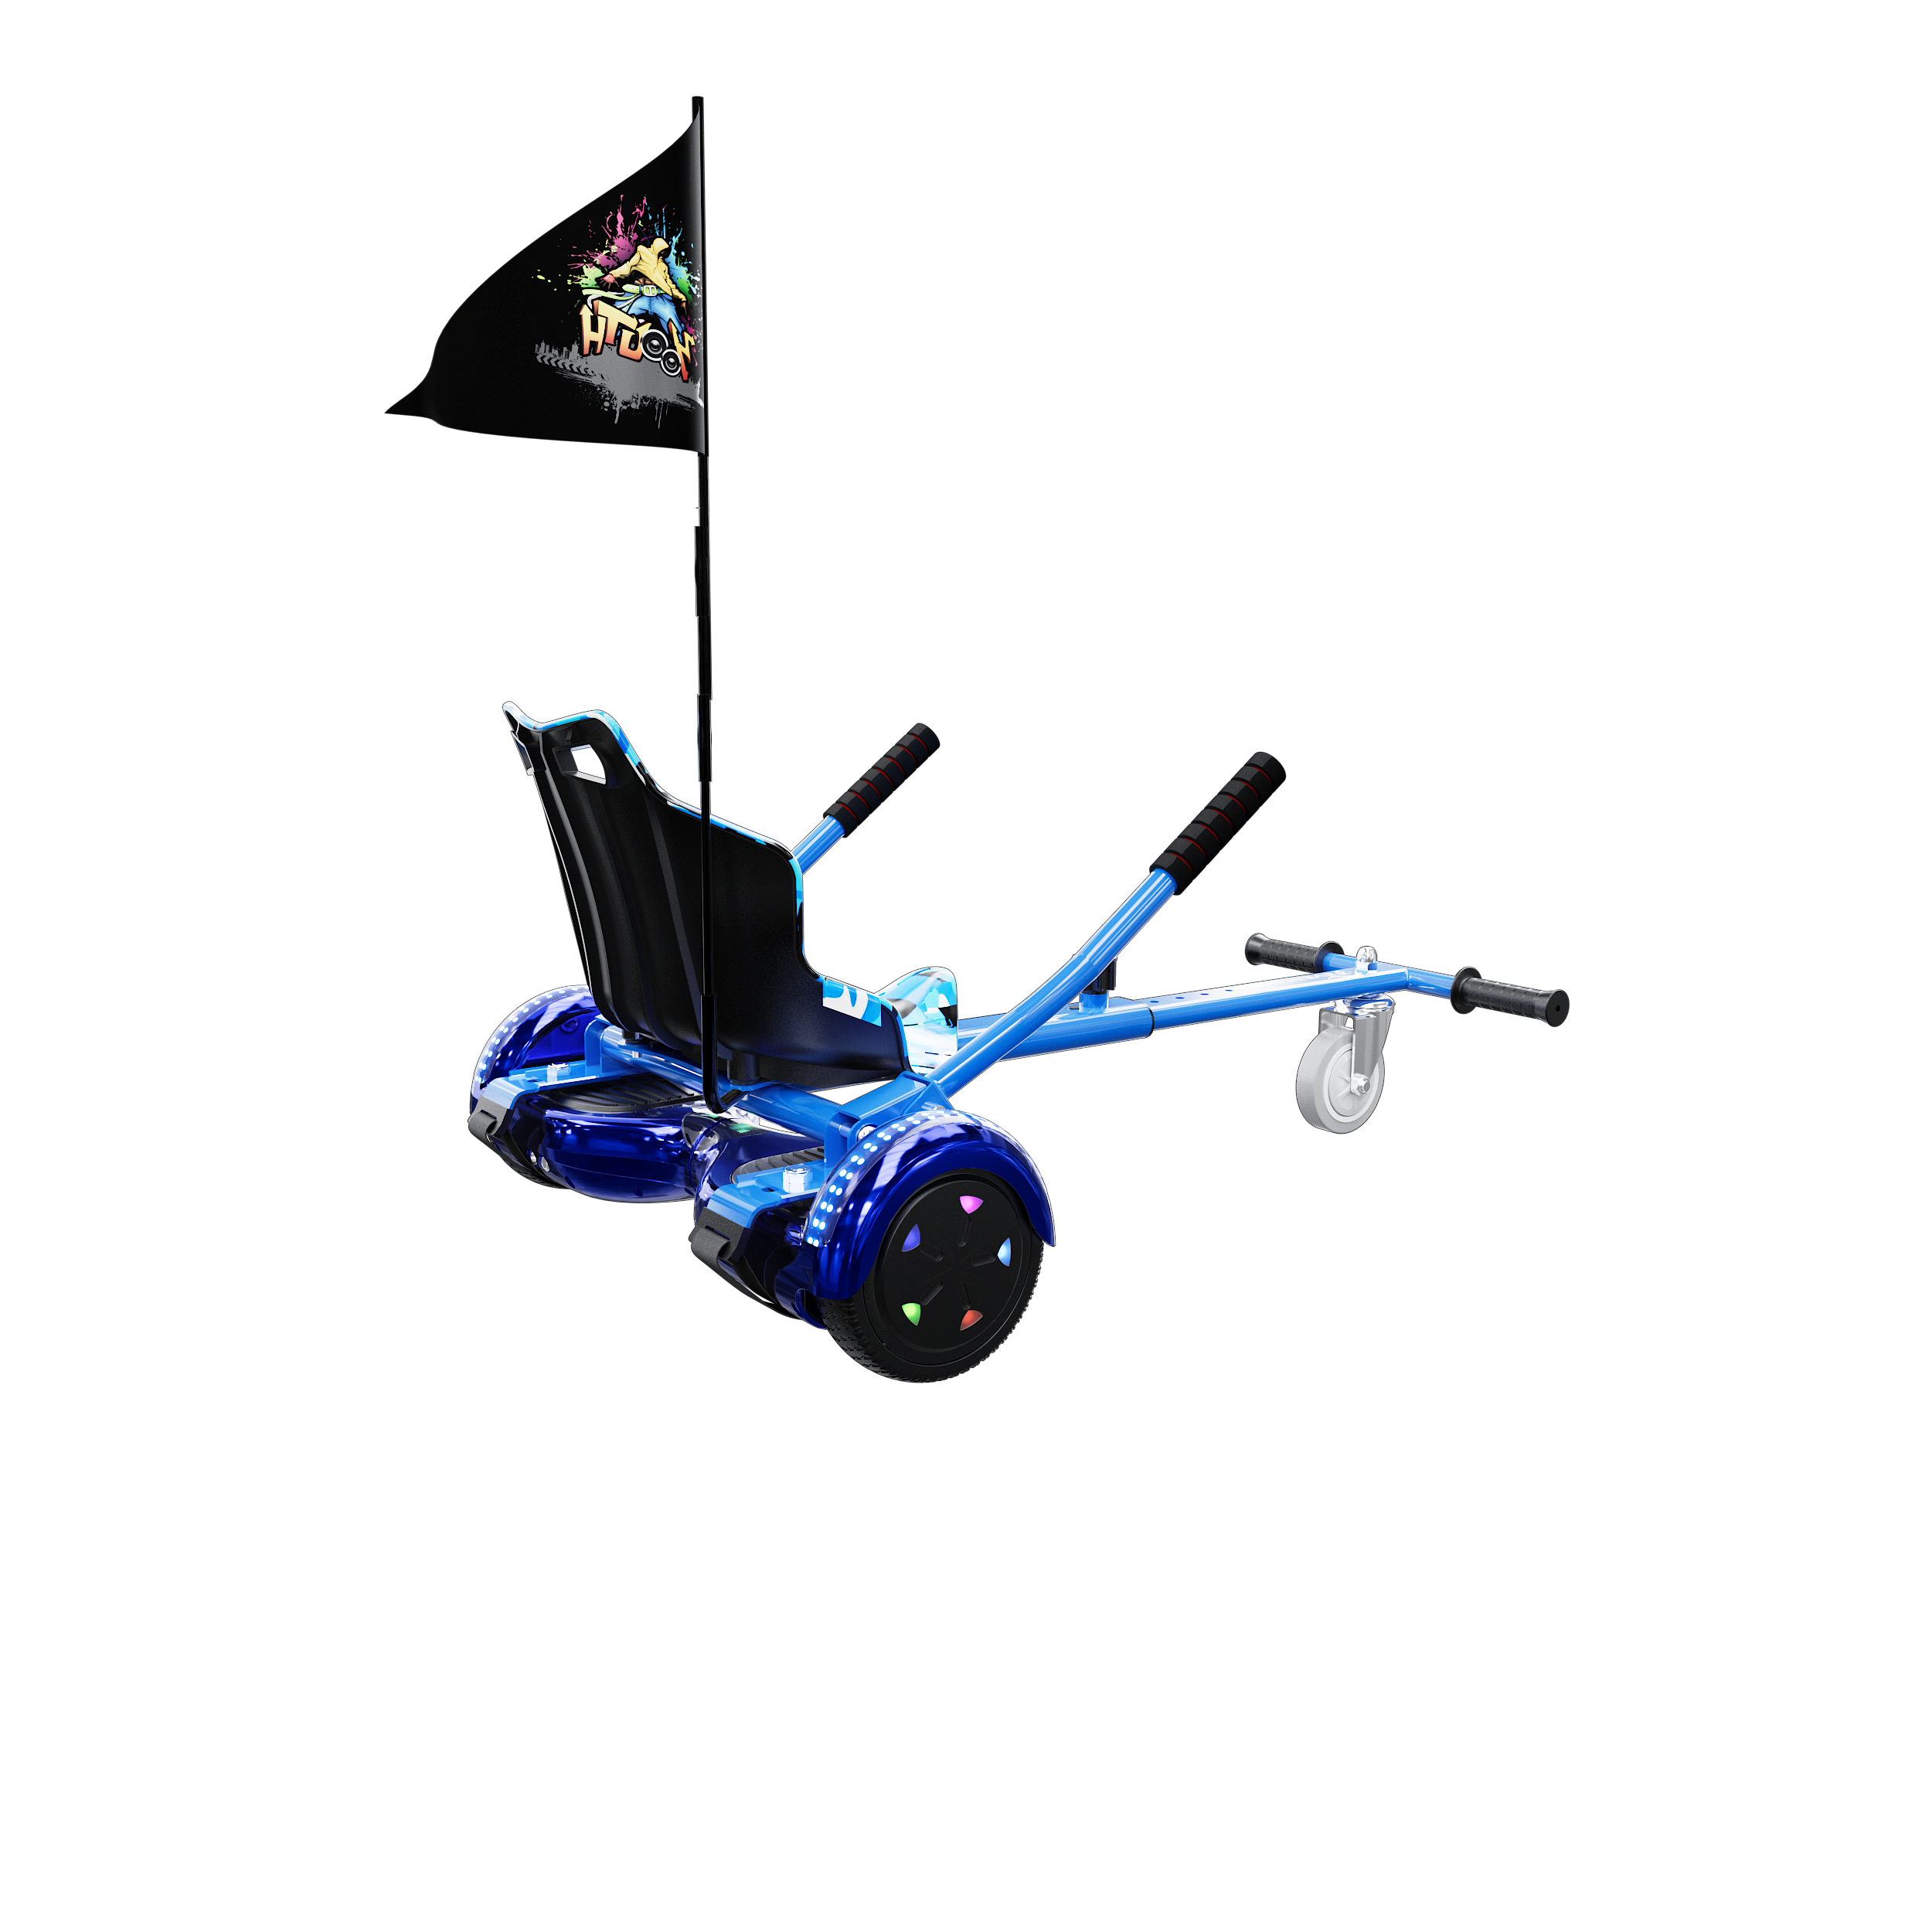 EverCross Hoverboard, scooter autoequilibrante con asiento fijo, 6.5  pulgadas, aeropatín con altavoz Bluetooth y luces LED coloridas, traje de